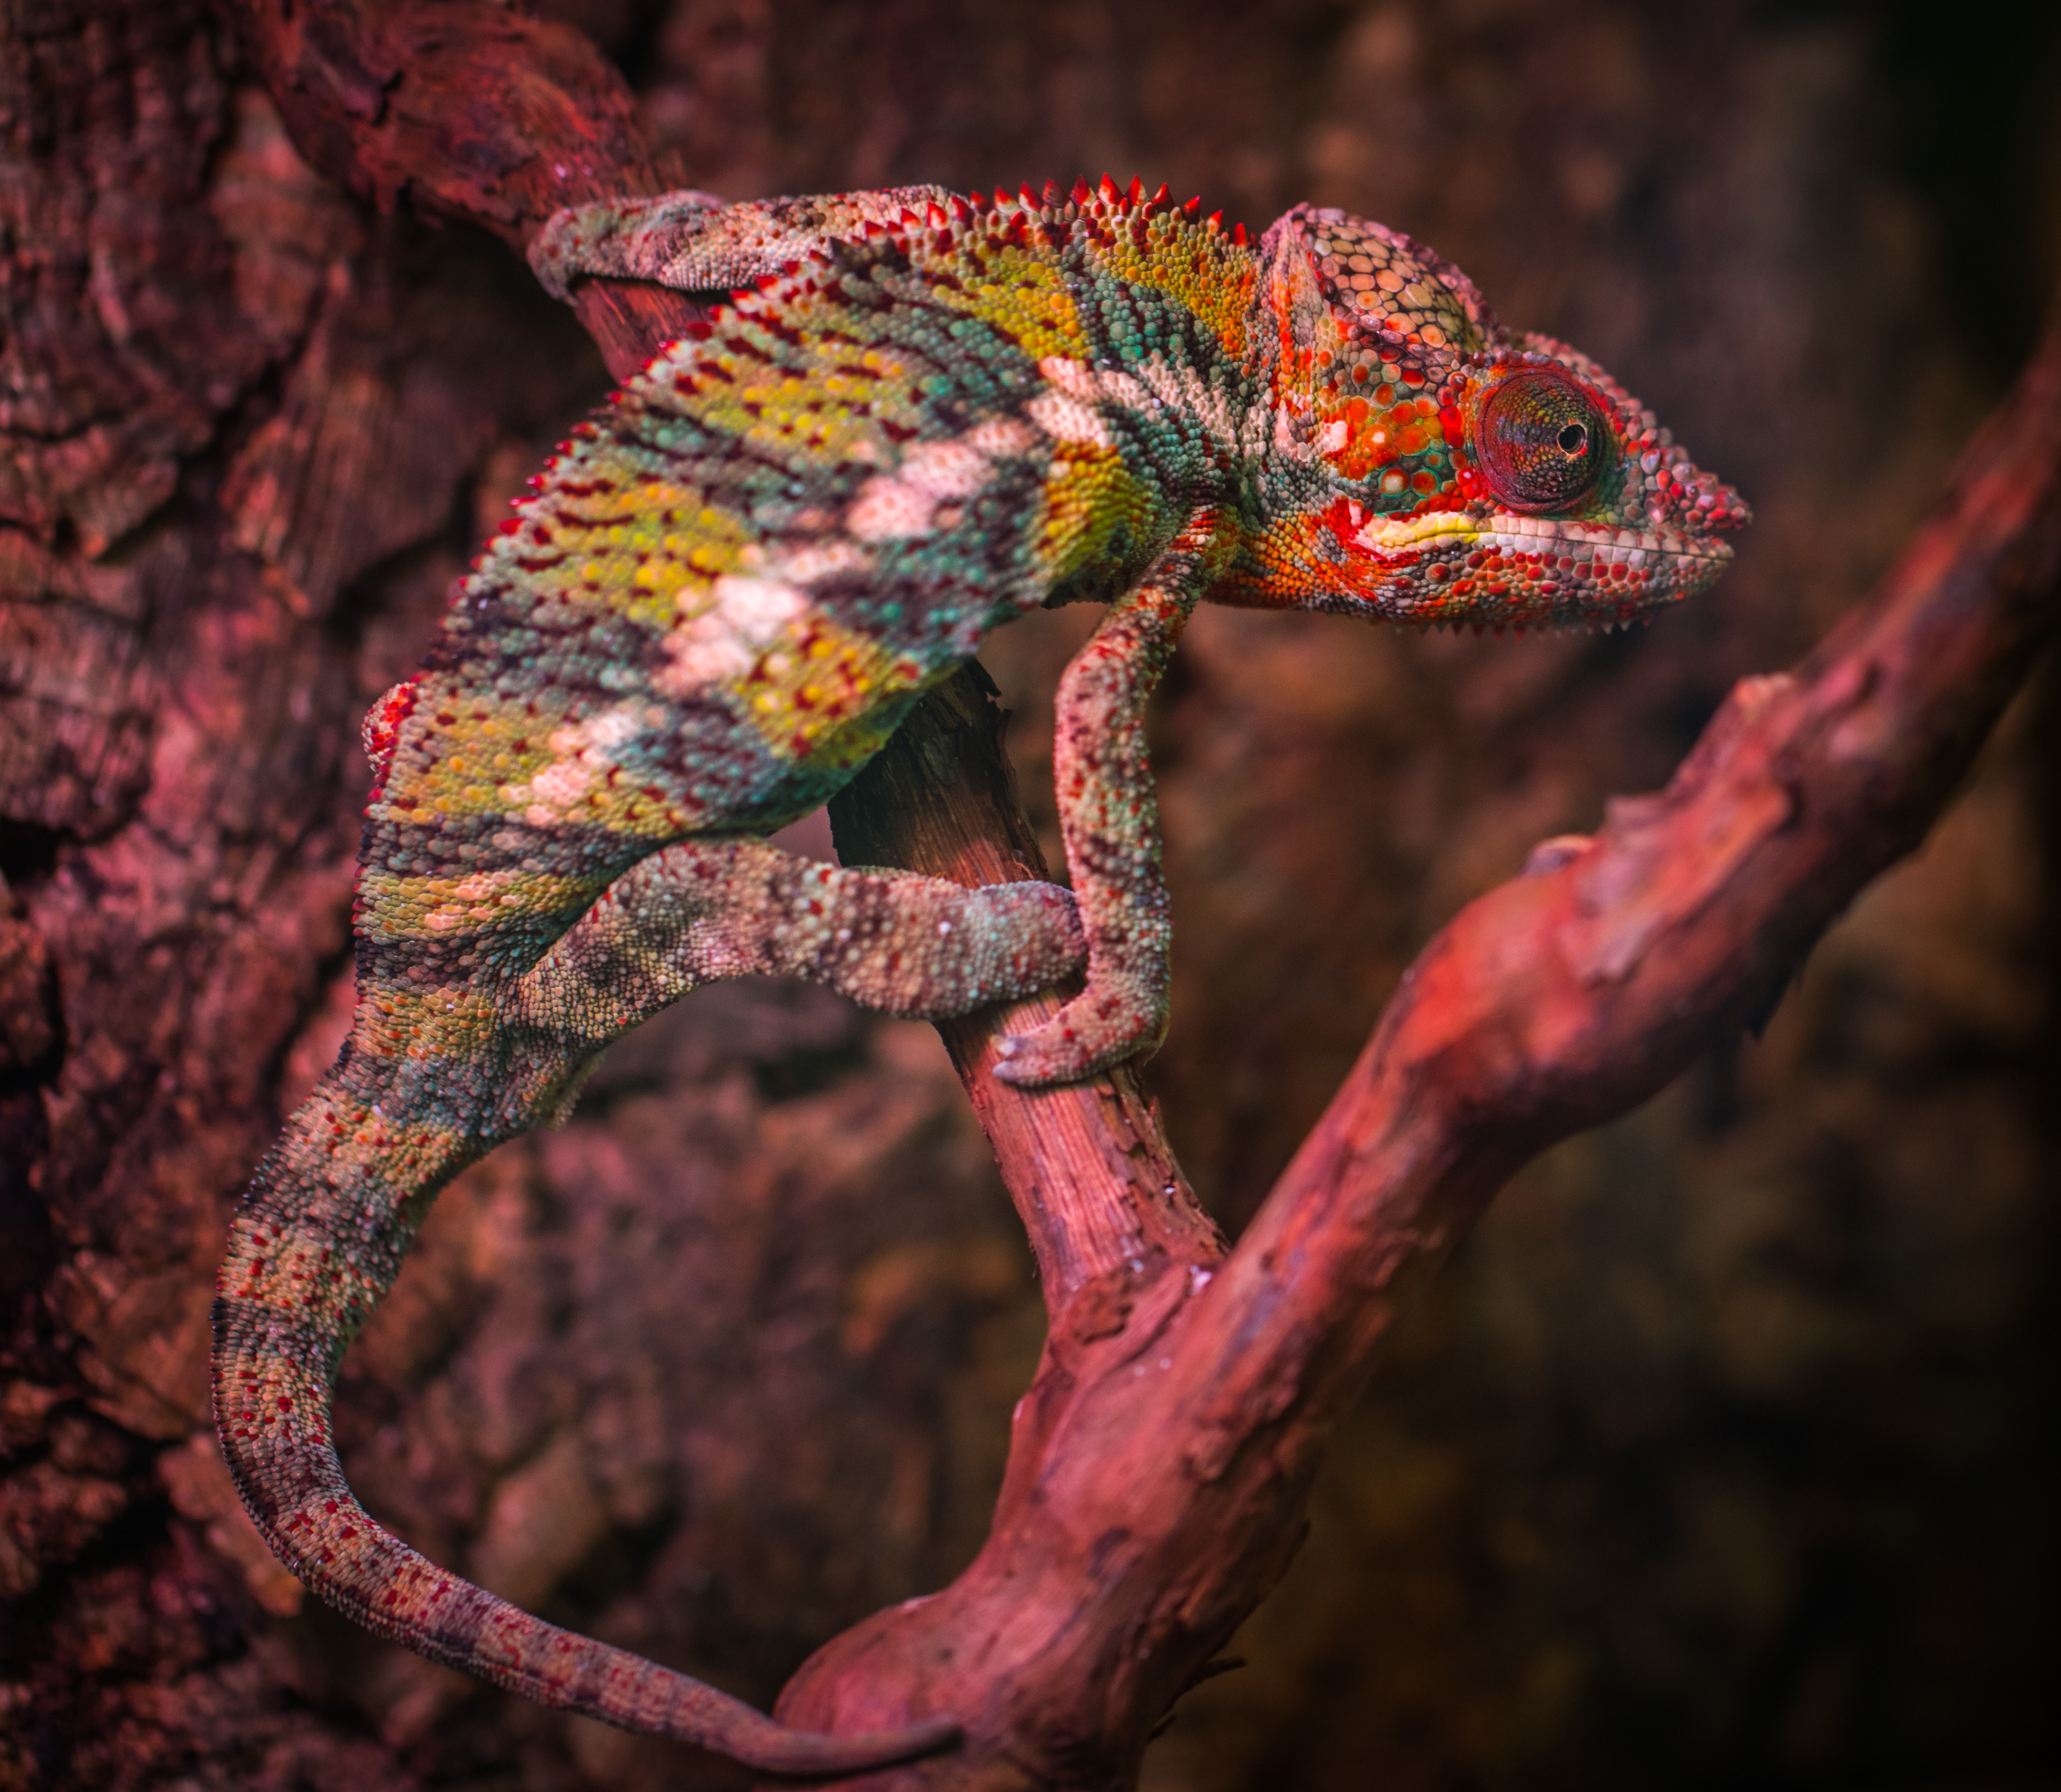 Veiled chameleon photo